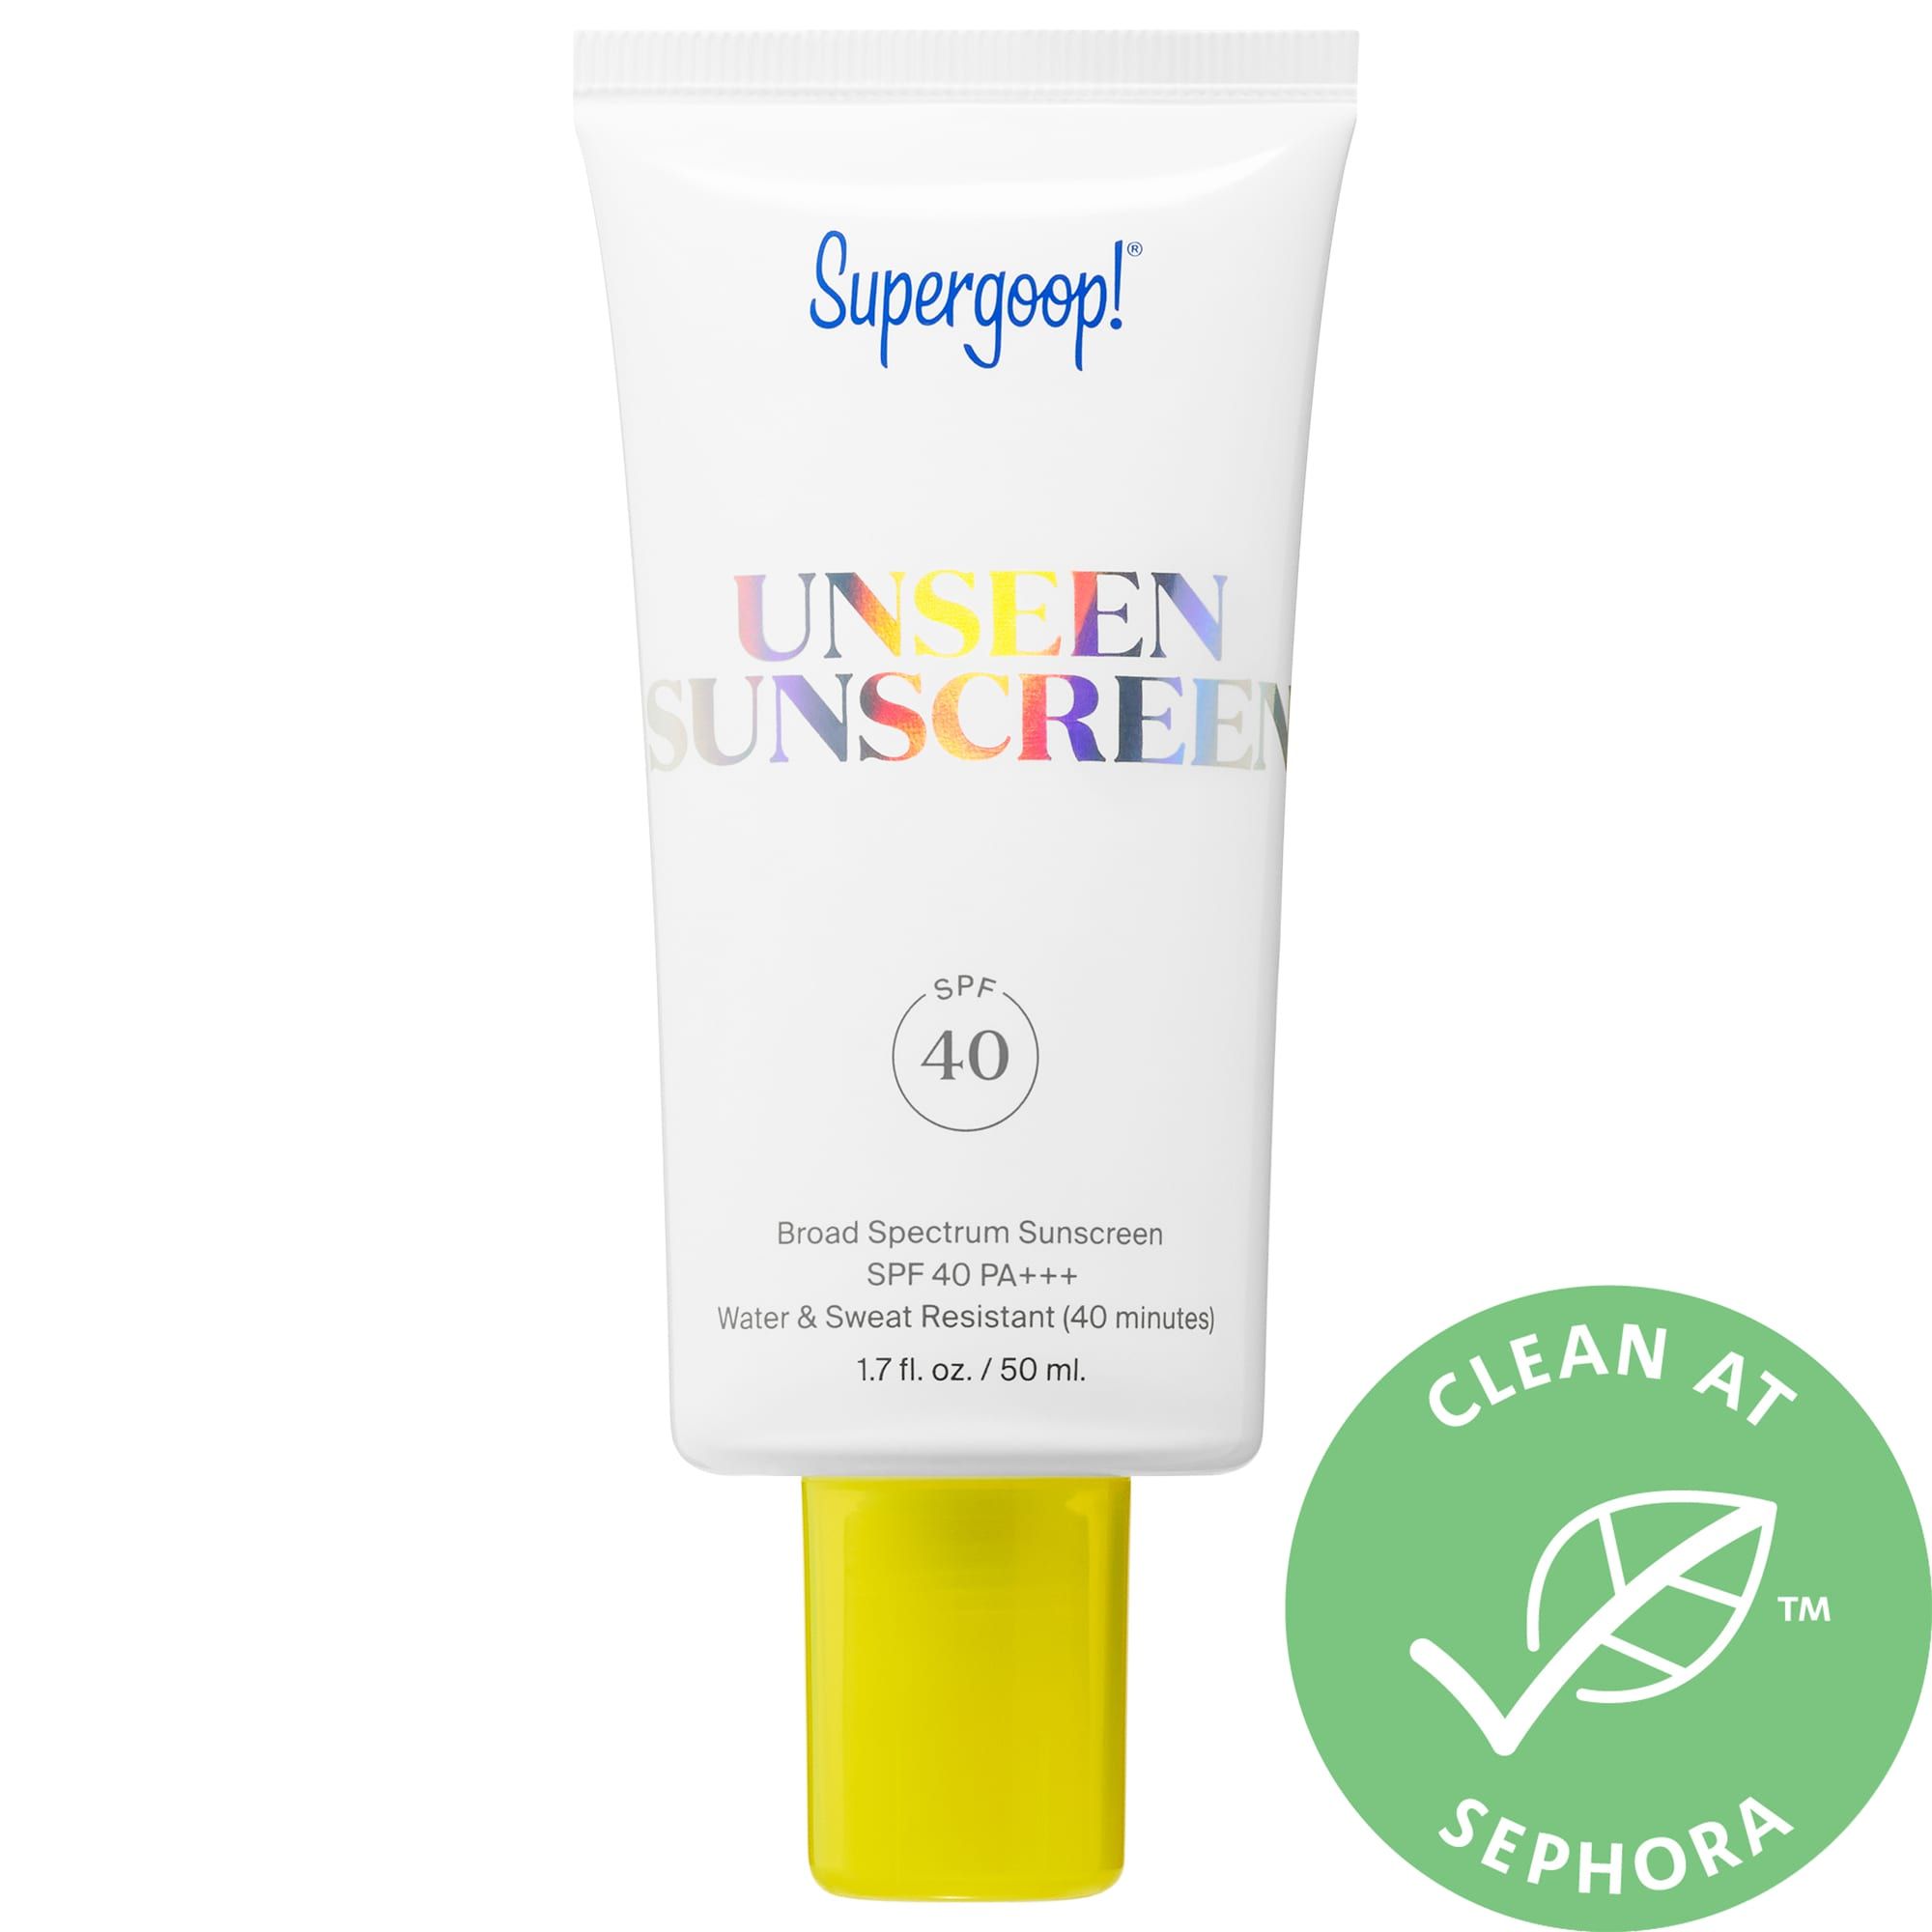 Unseen Sunscreen SPF 40 PA+++